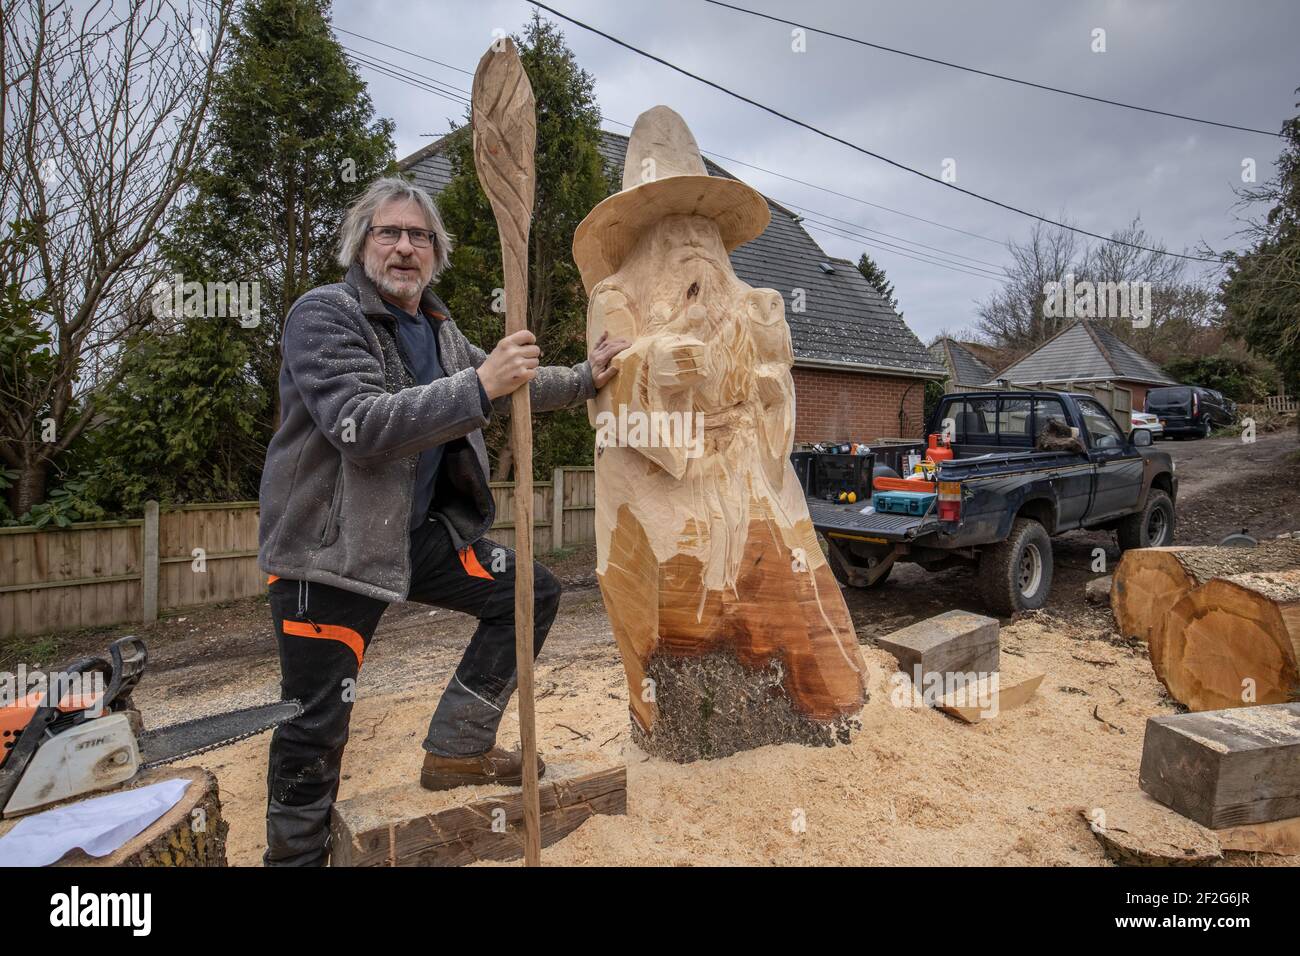 Jona Cleaver intagliando una scultura in legno di dimensioni giganti di Gandalf dal Signore degli anelli su un albero d'acero per una commissione privata, Hampshire, Inghilterra Foto Stock